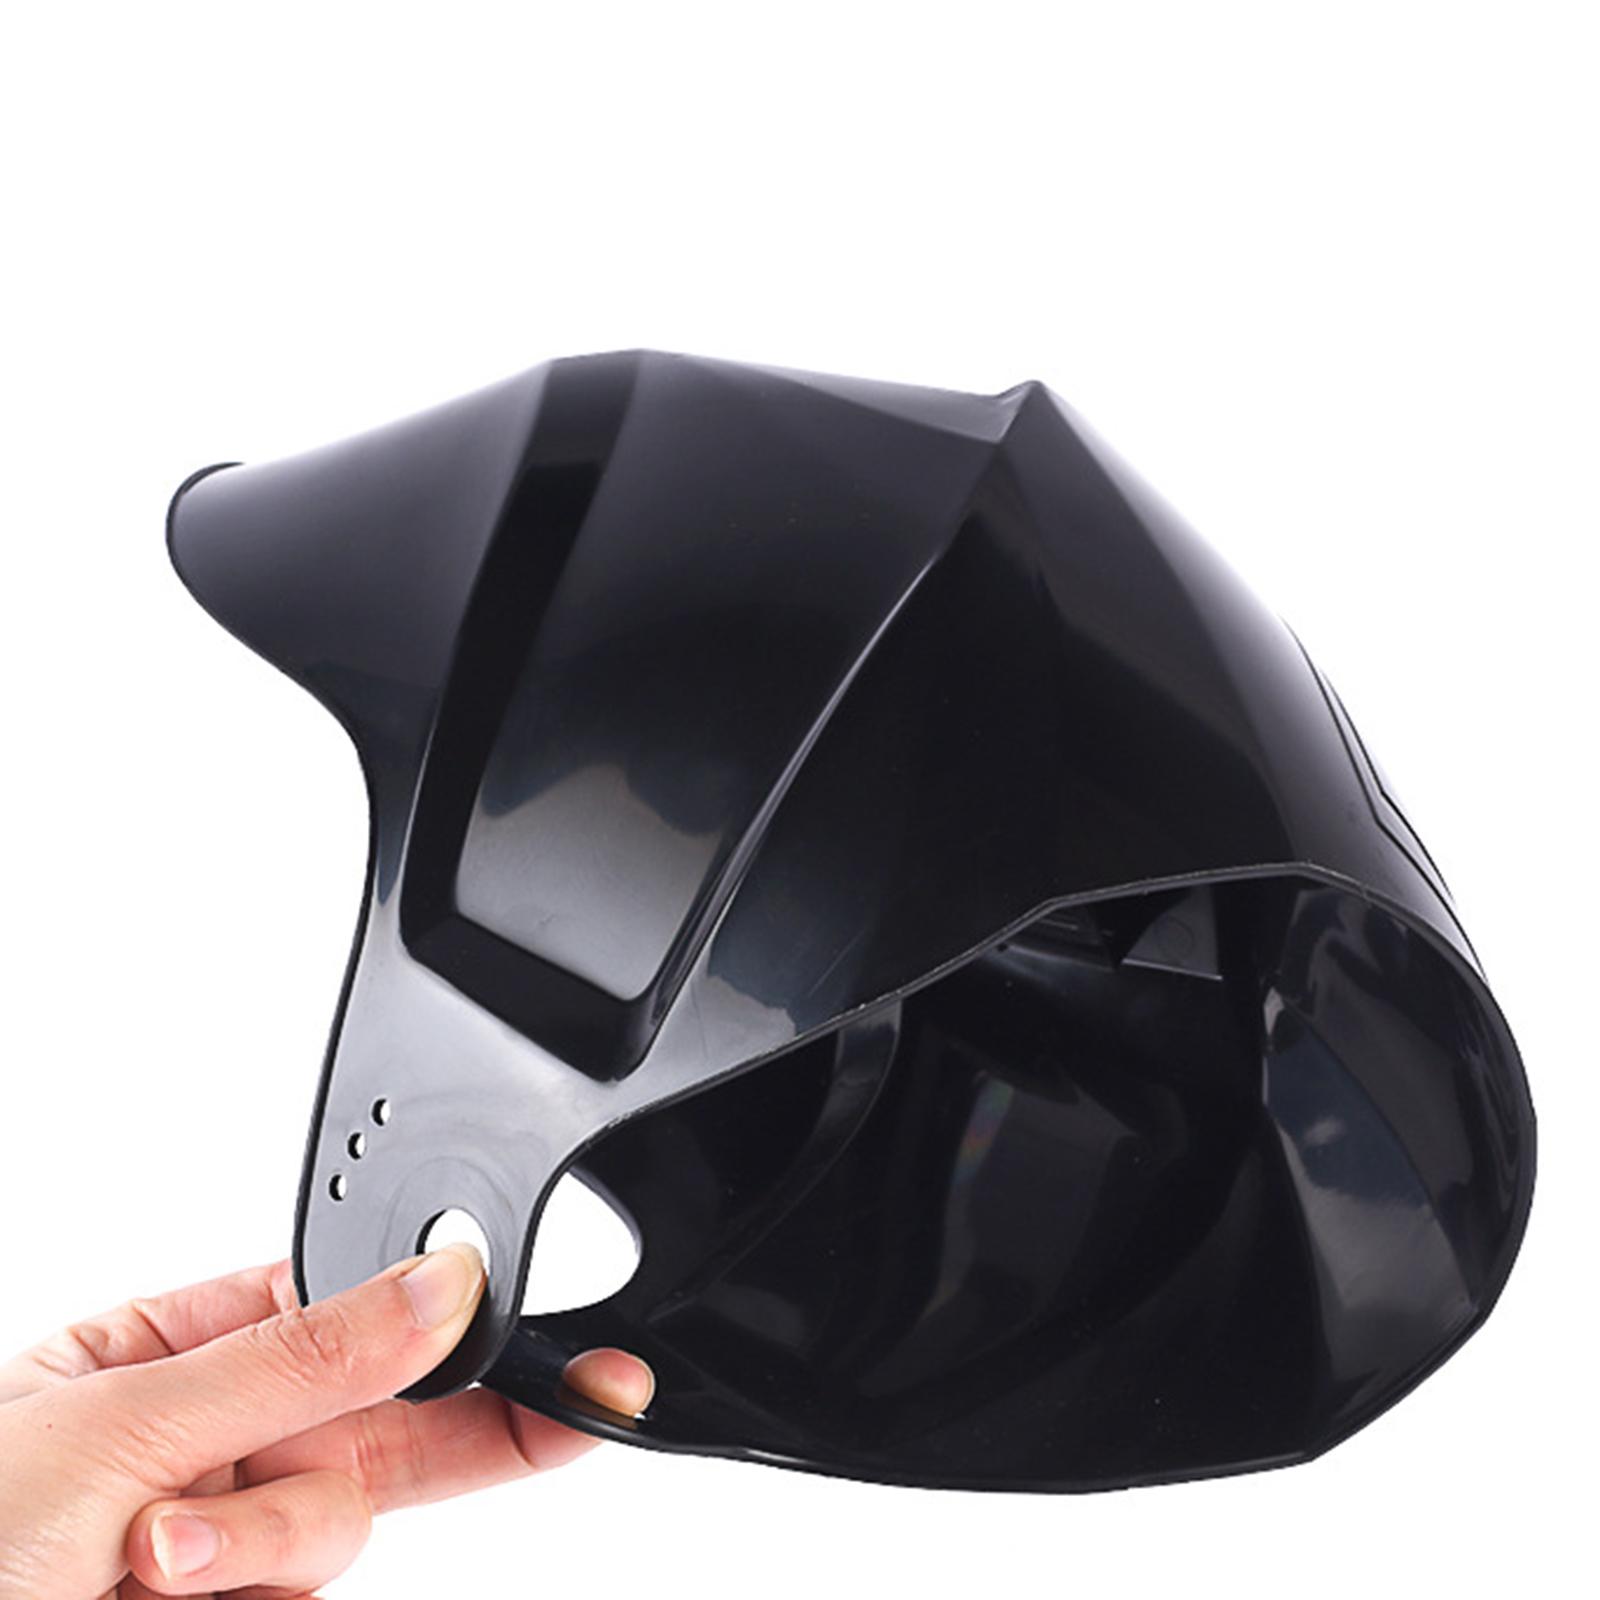 2xAuto Darkening Welding Helmet Mask Hood for Grinding  MIG TIG Welding